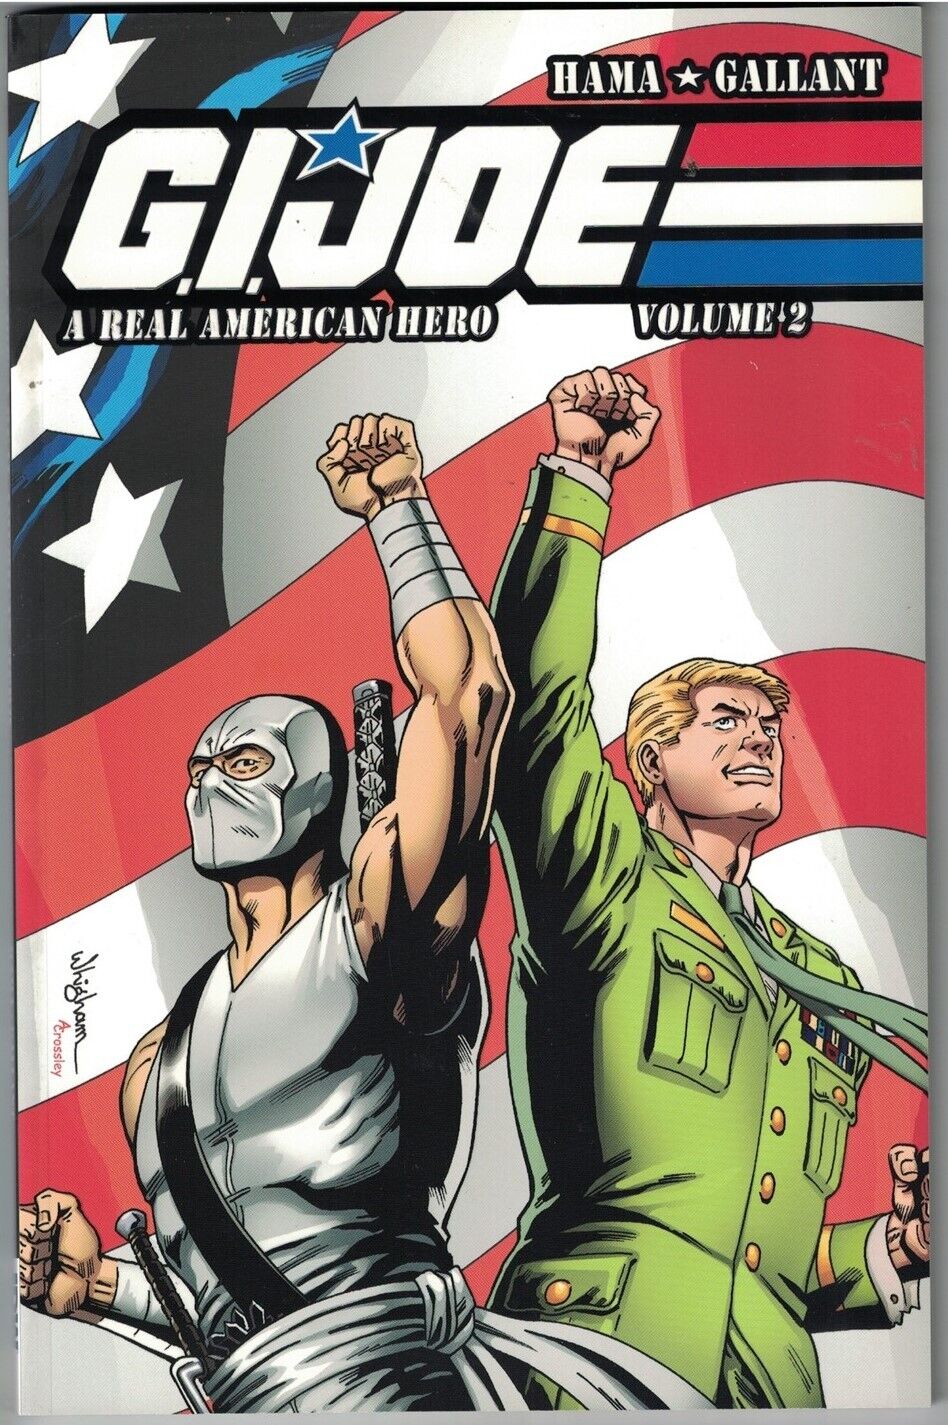 GI JOE A REAL AMERICAN HERO Vol 2 TP TPB $19.99srp Snake Eyes #161-165 NEW NM